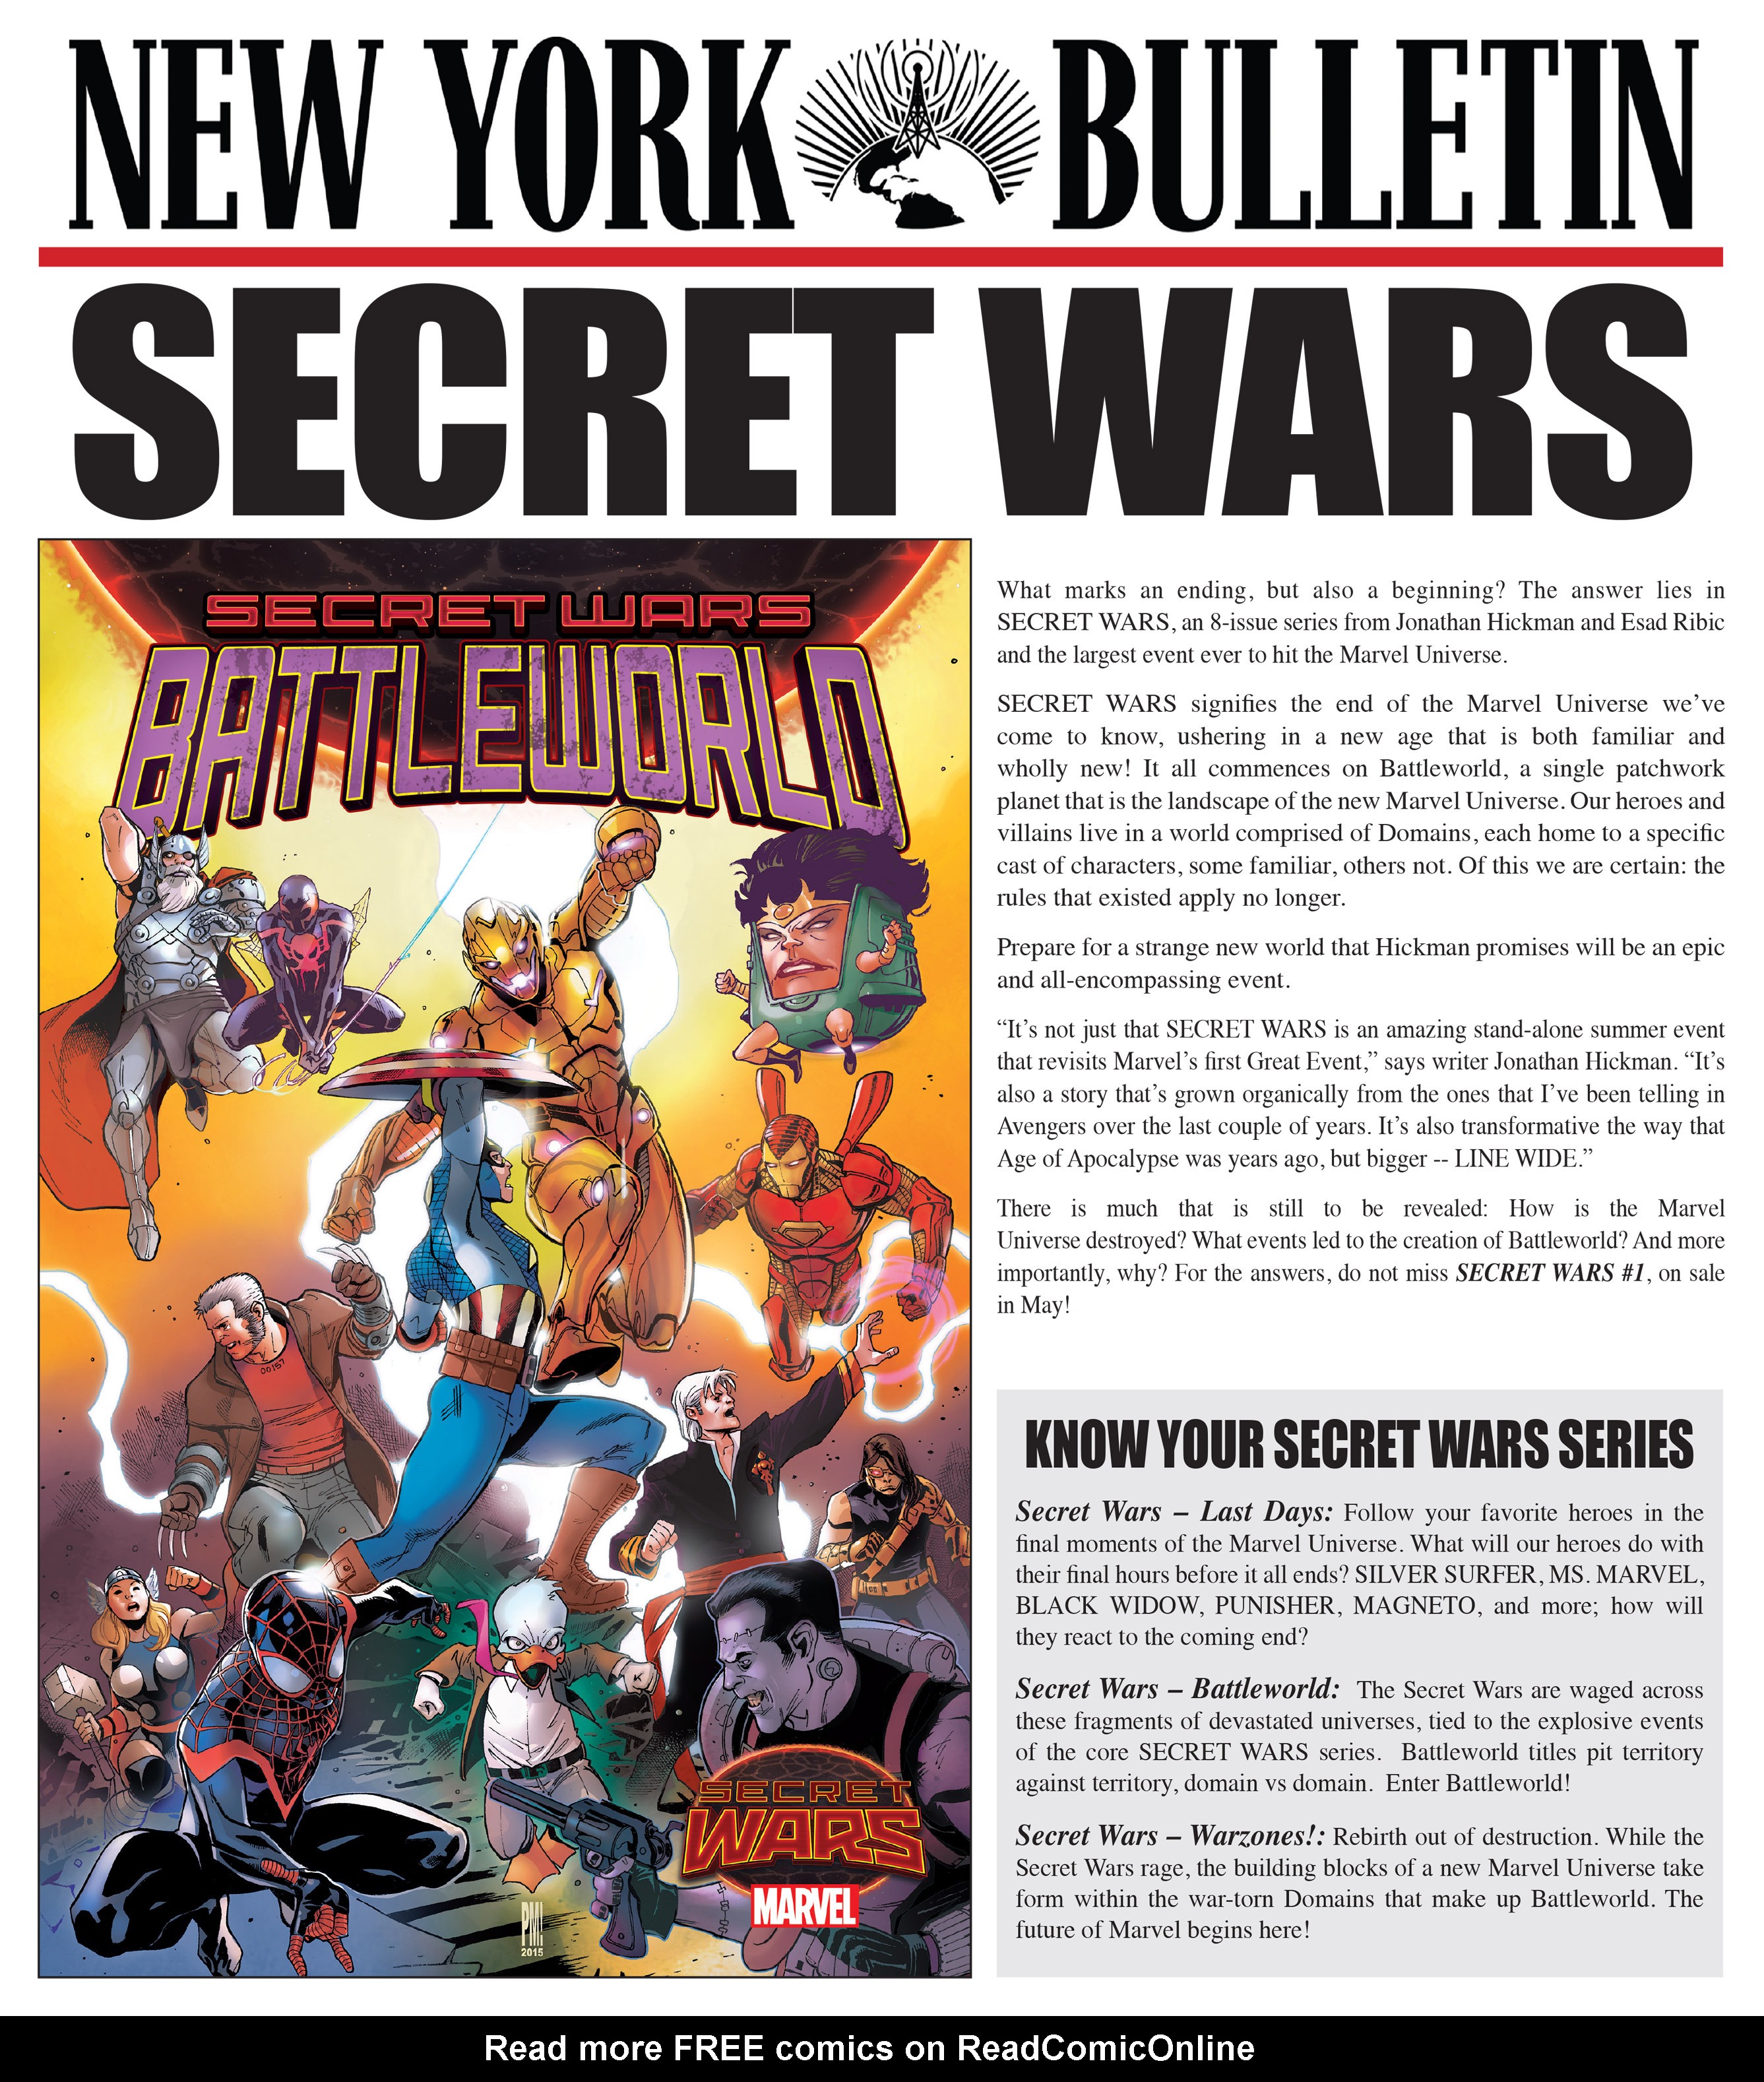 Read online Marvel's New York Bulletin Secret Wars Newspaper comic -  Issue # Full - 3